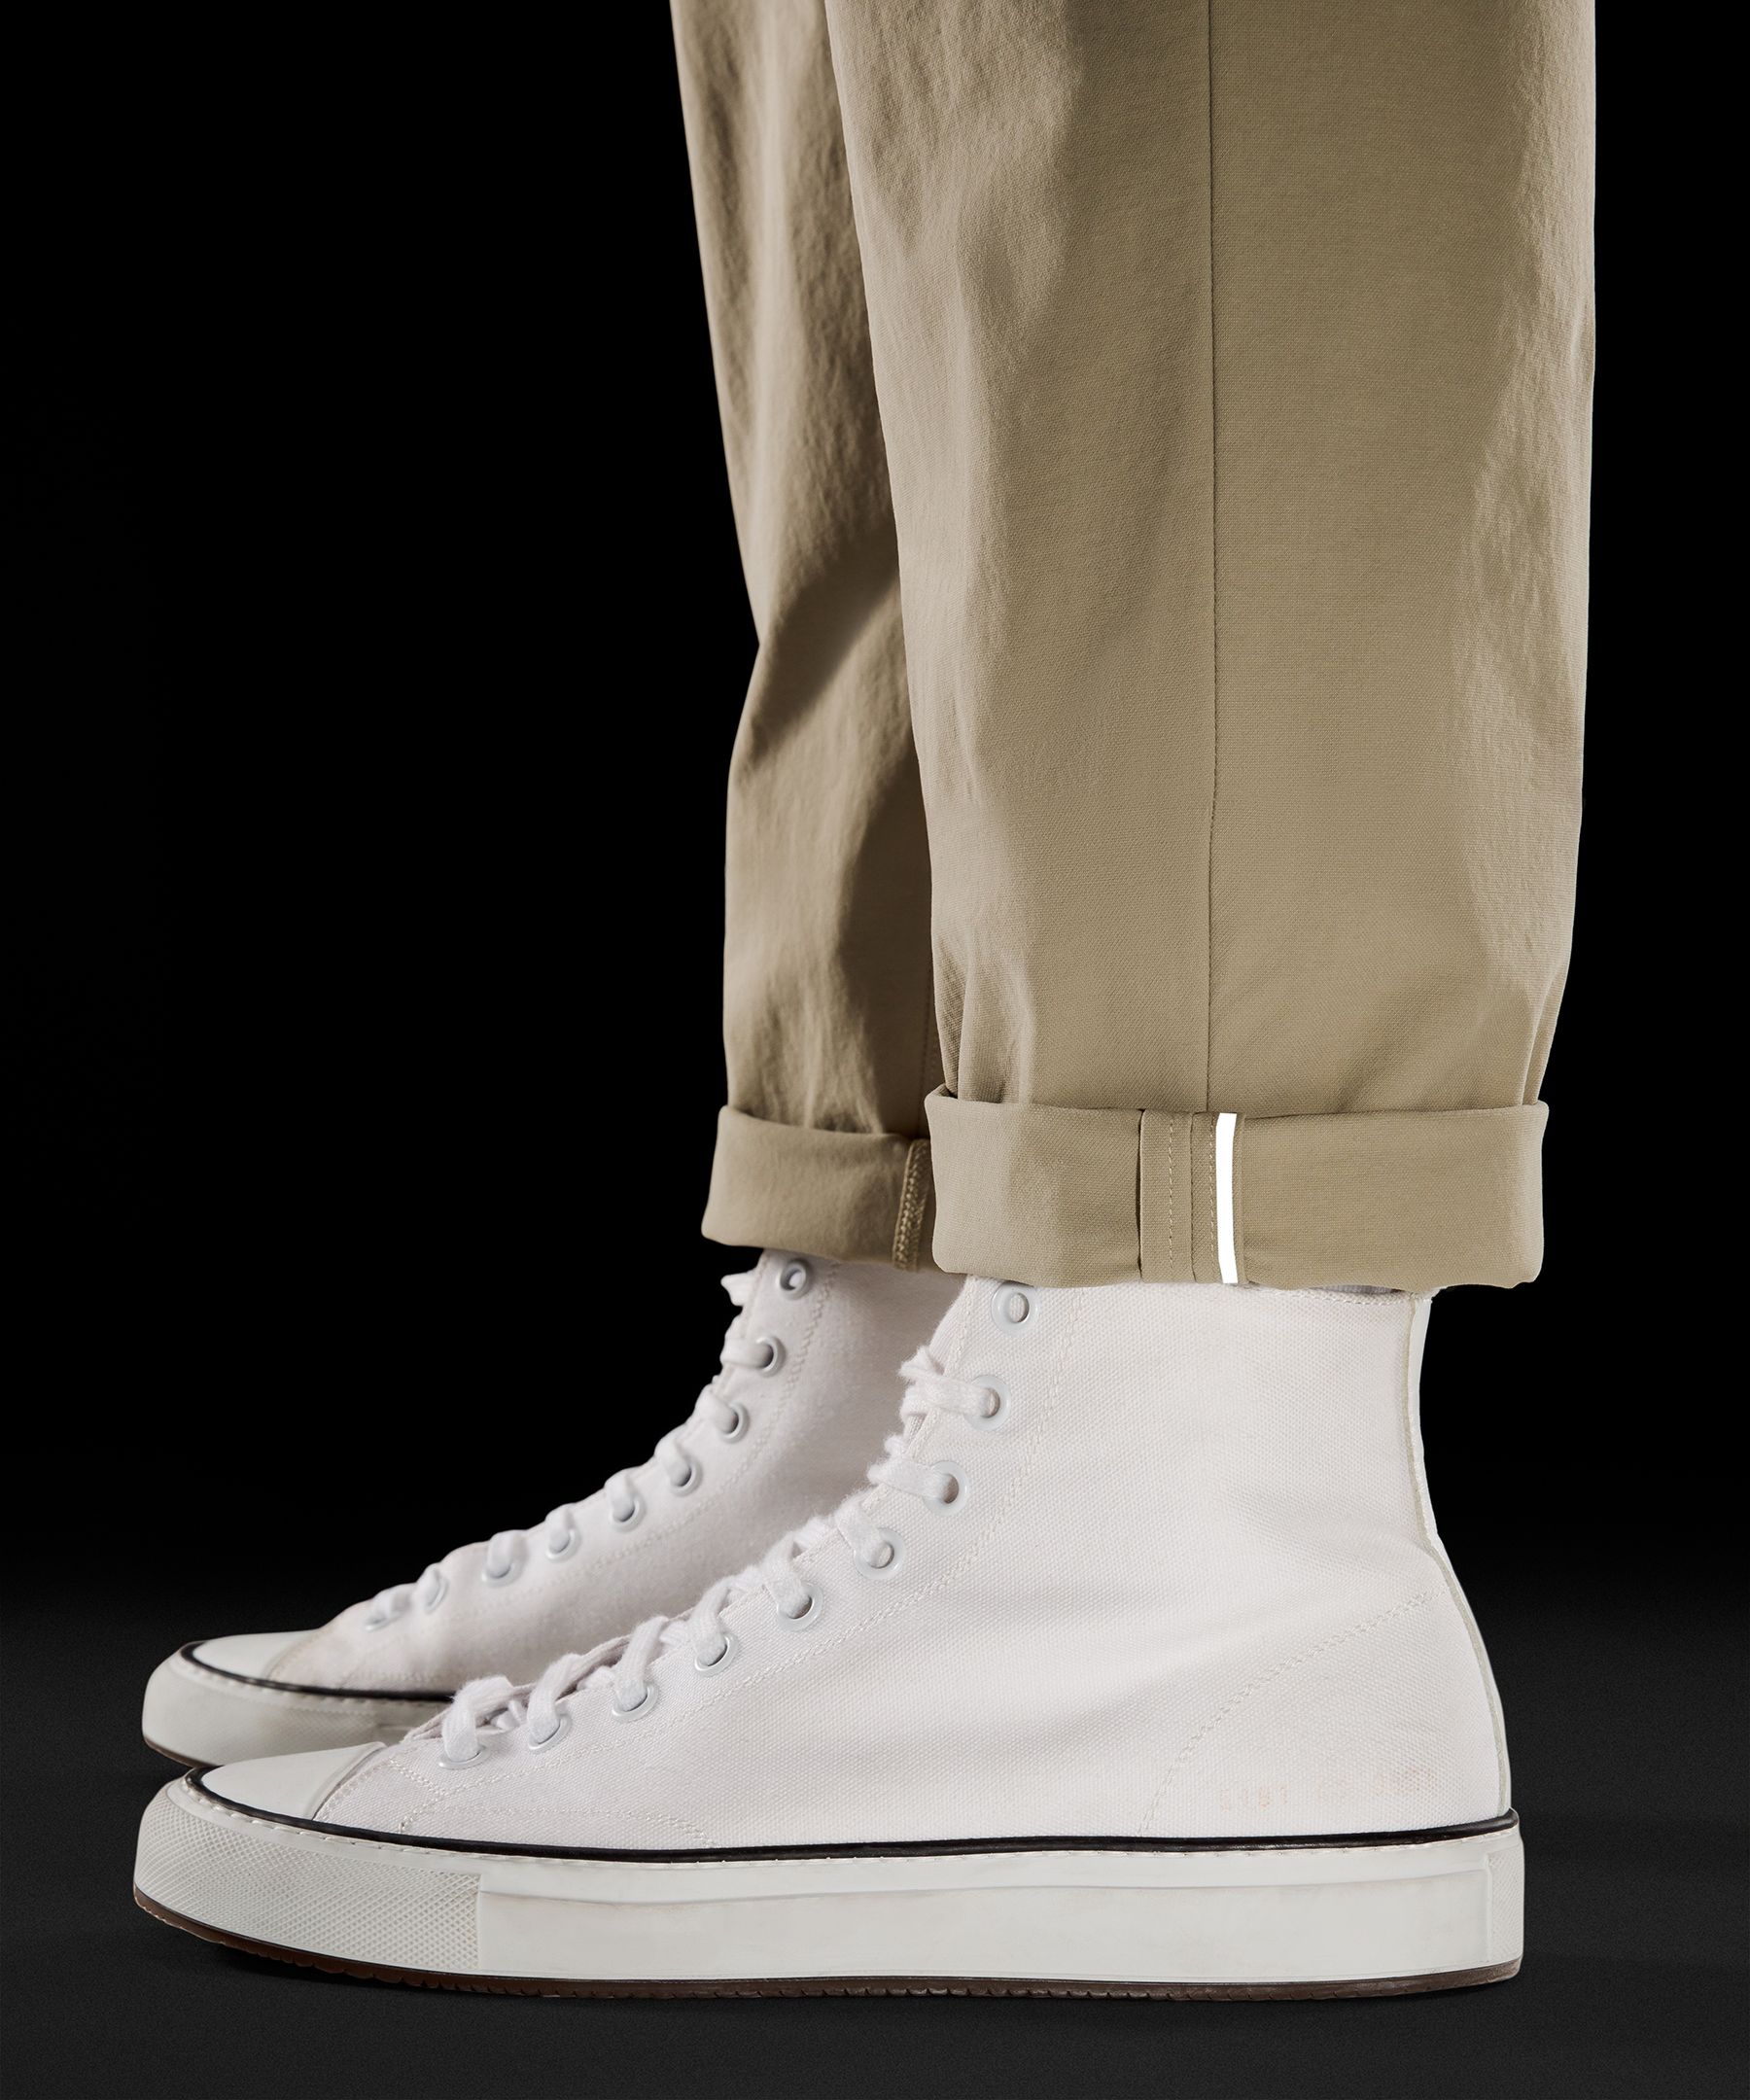 ABC Classic-Fit Trouser 34"L *Stretch Cotton VersaTwill | Men's Trousers